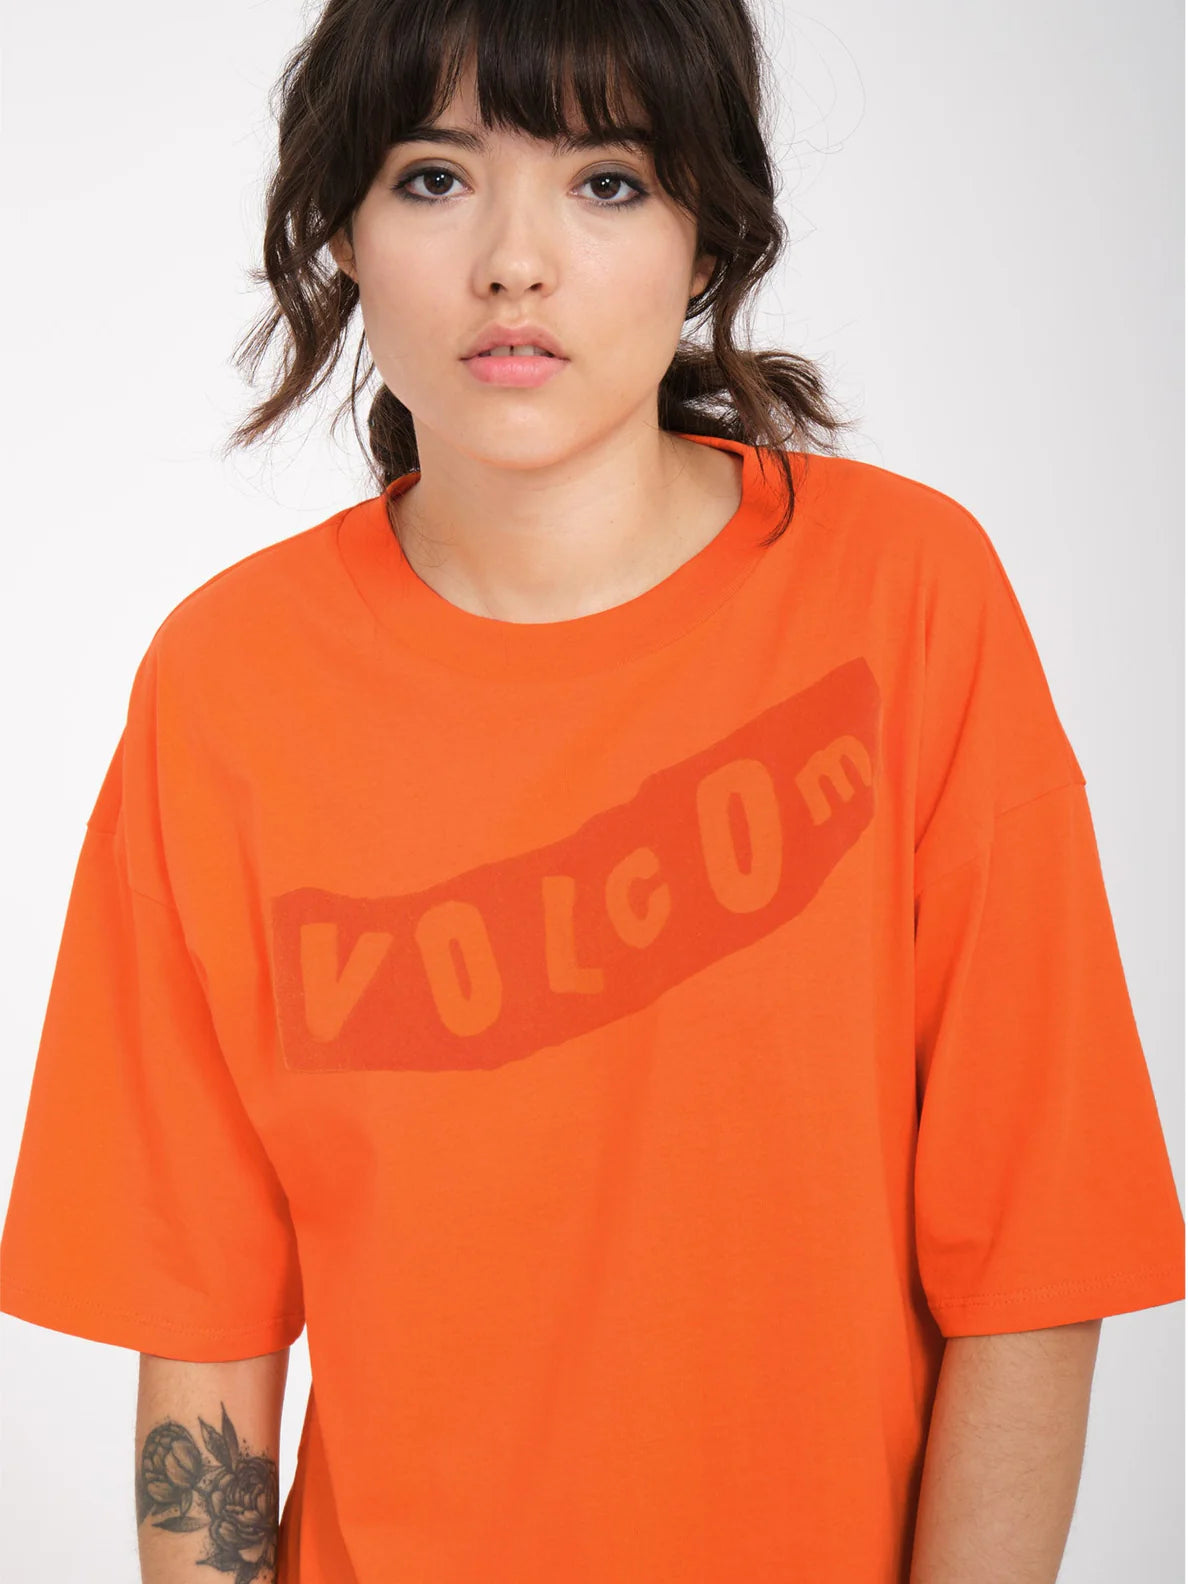 T-shirt Fille Volcom Pistol - Carotte | Boutique Volcom | Collection_Zalando | Nouveaux produits | Produits les plus récents | Produits les plus vendus | T-shirts manches courtes femme | surfdevils.com